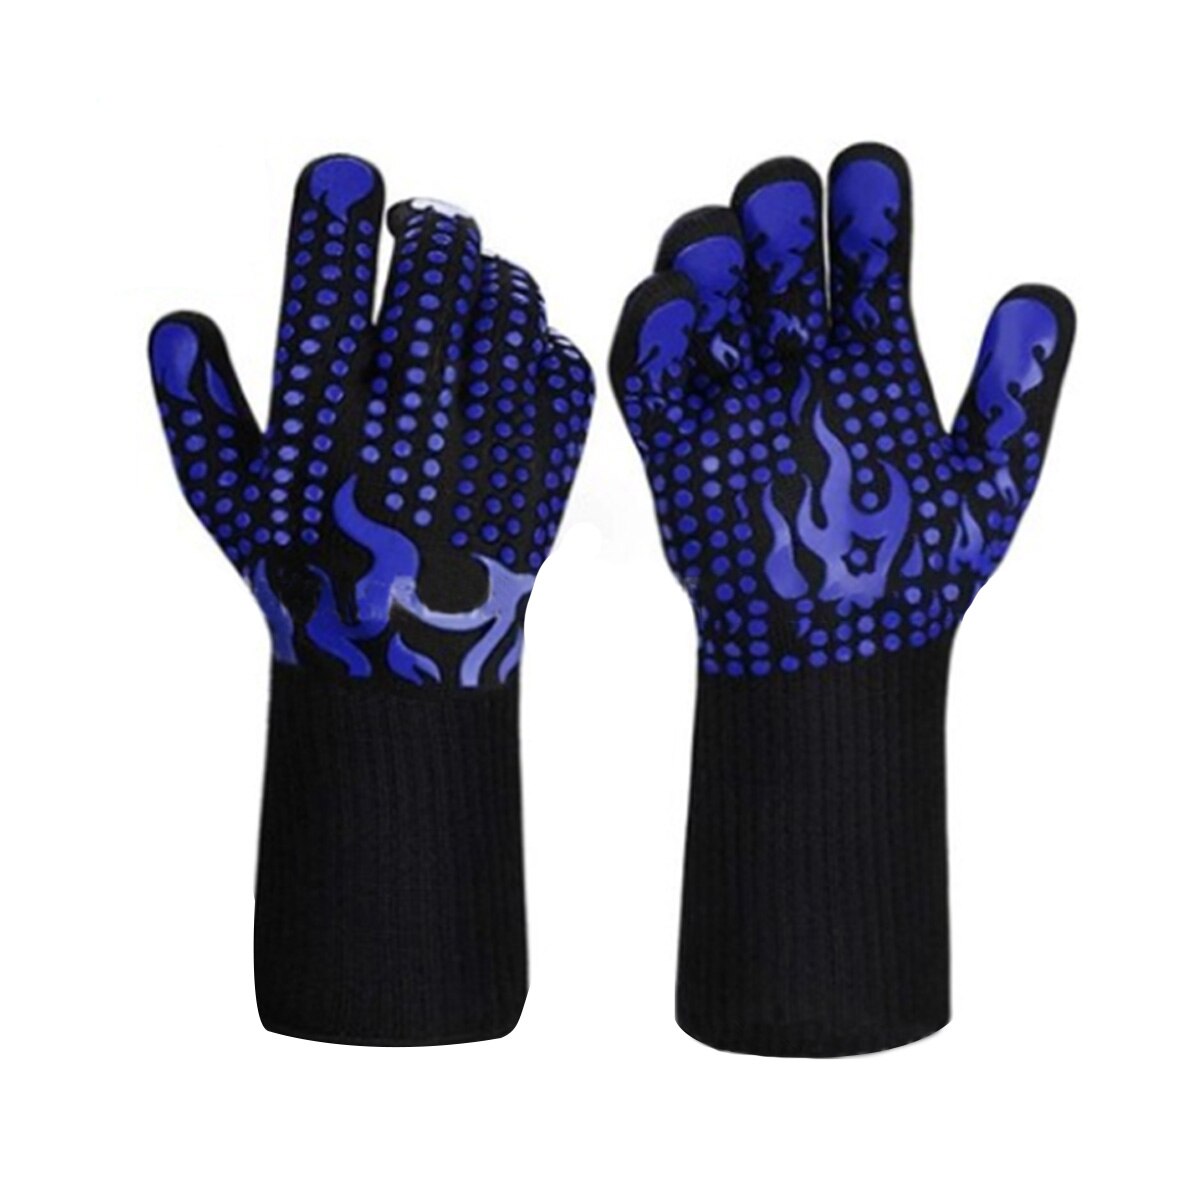 Volwassenen Hittebestendige Handschoenen, Anti-Slip Siliconen Grillen Handschoenen Voor Bbq Oven, Rood/Blauw: 2